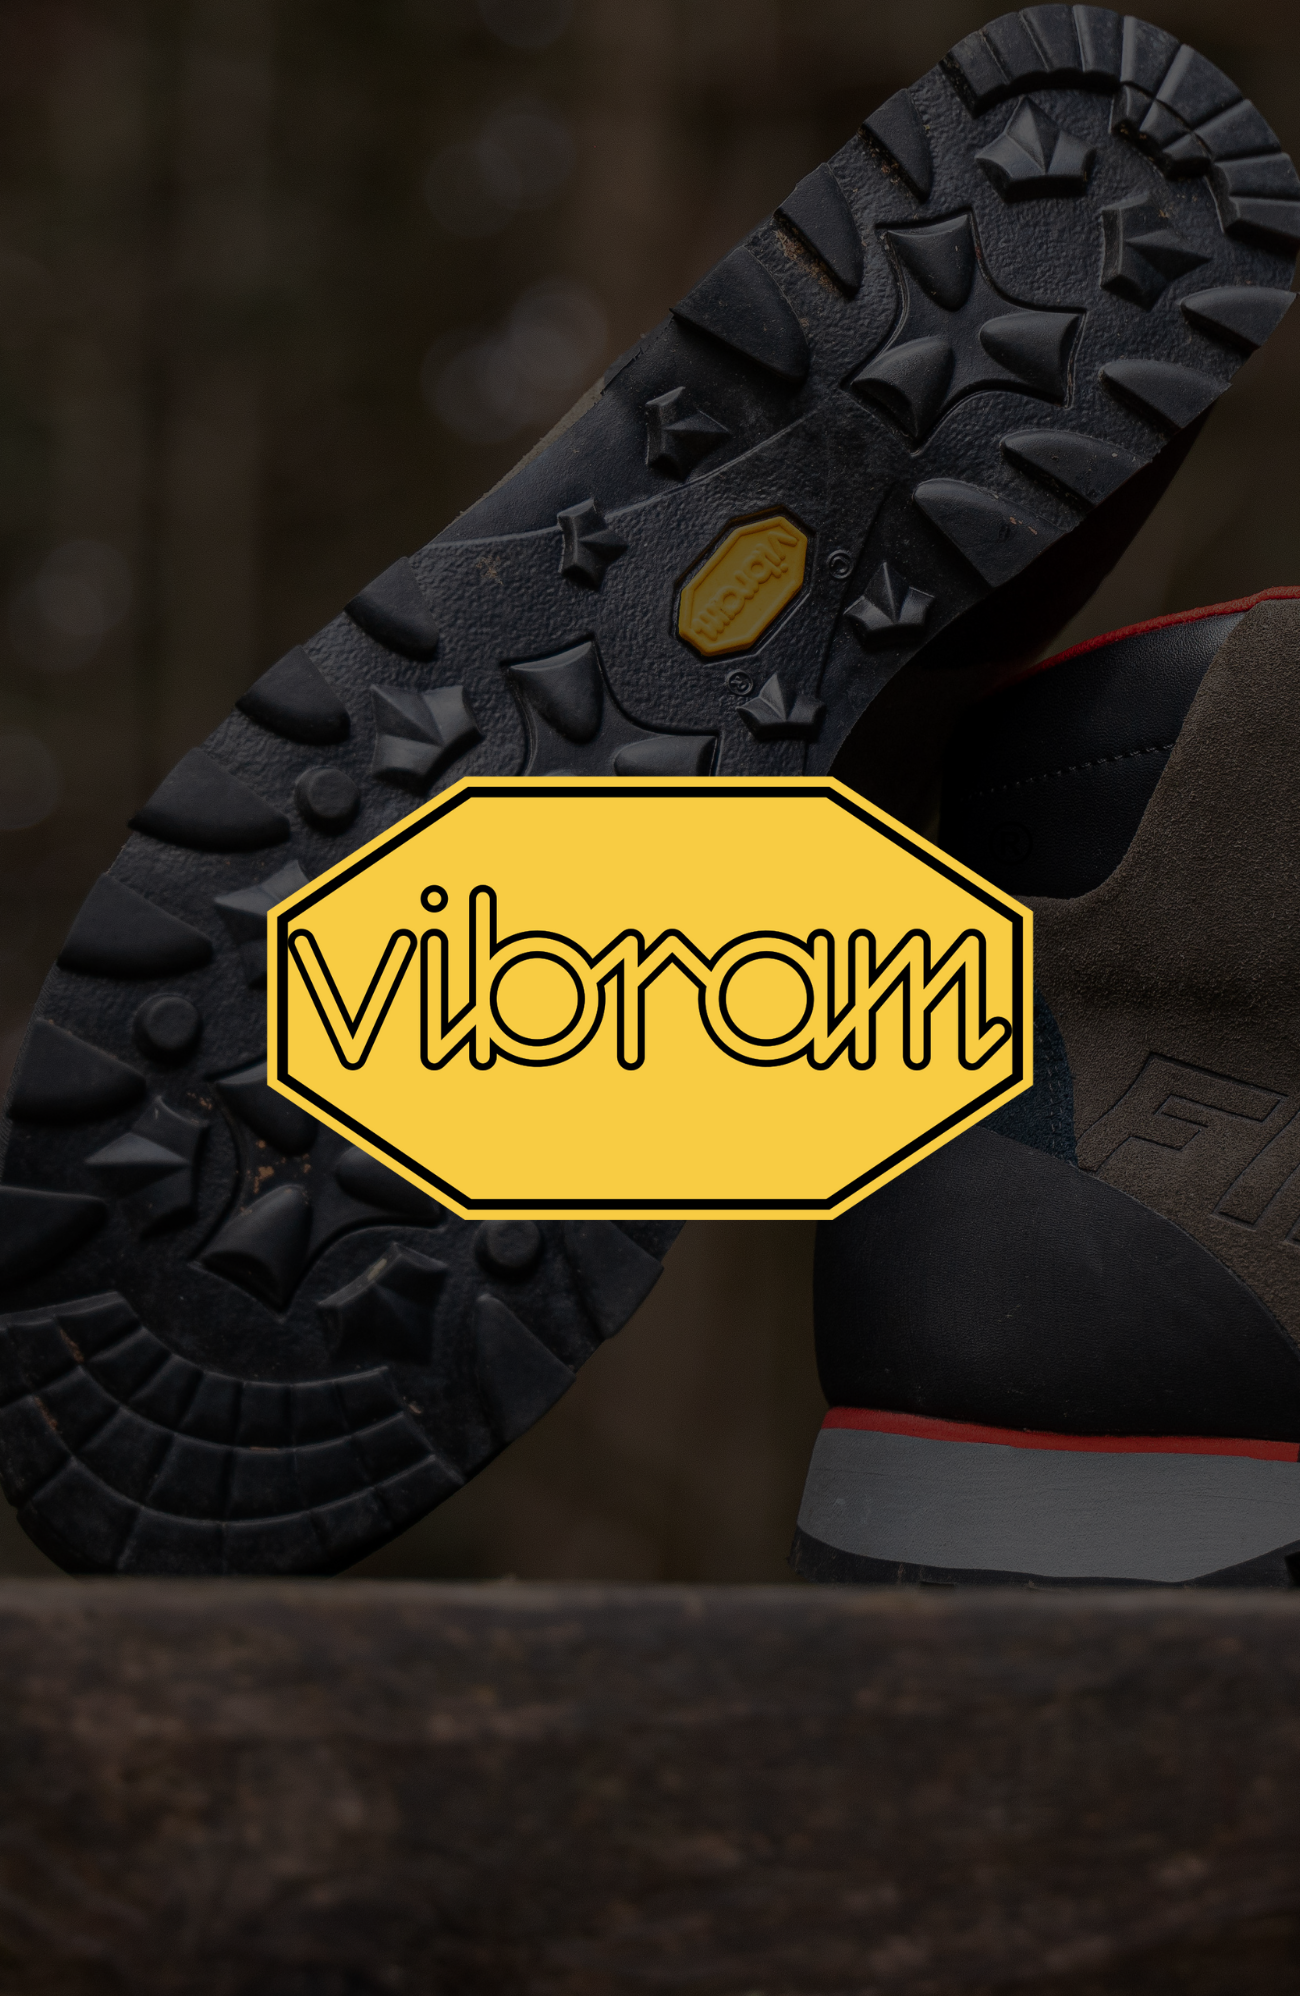 VIBRAM®: Kultovní značka je zárukou pevných kroků v příjemných i náročných podmínkách